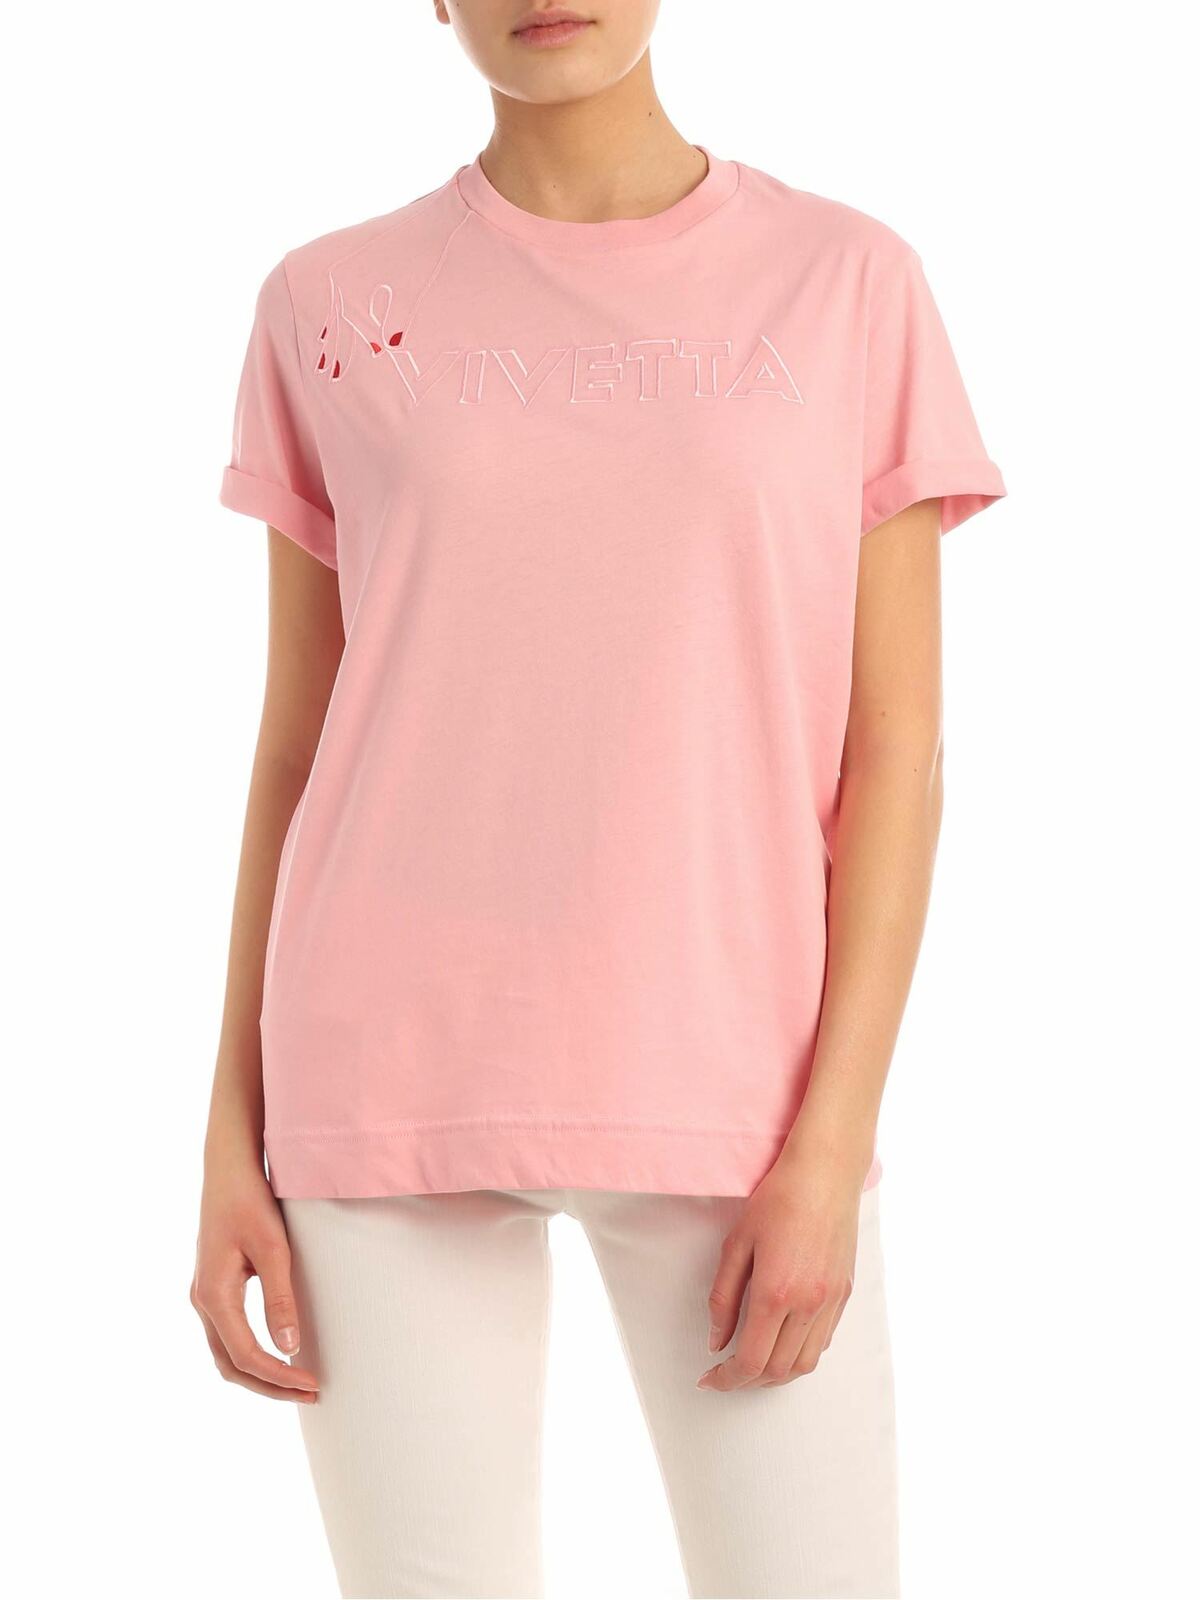 Vivetta Vivietta Hand T-shirt In Pink